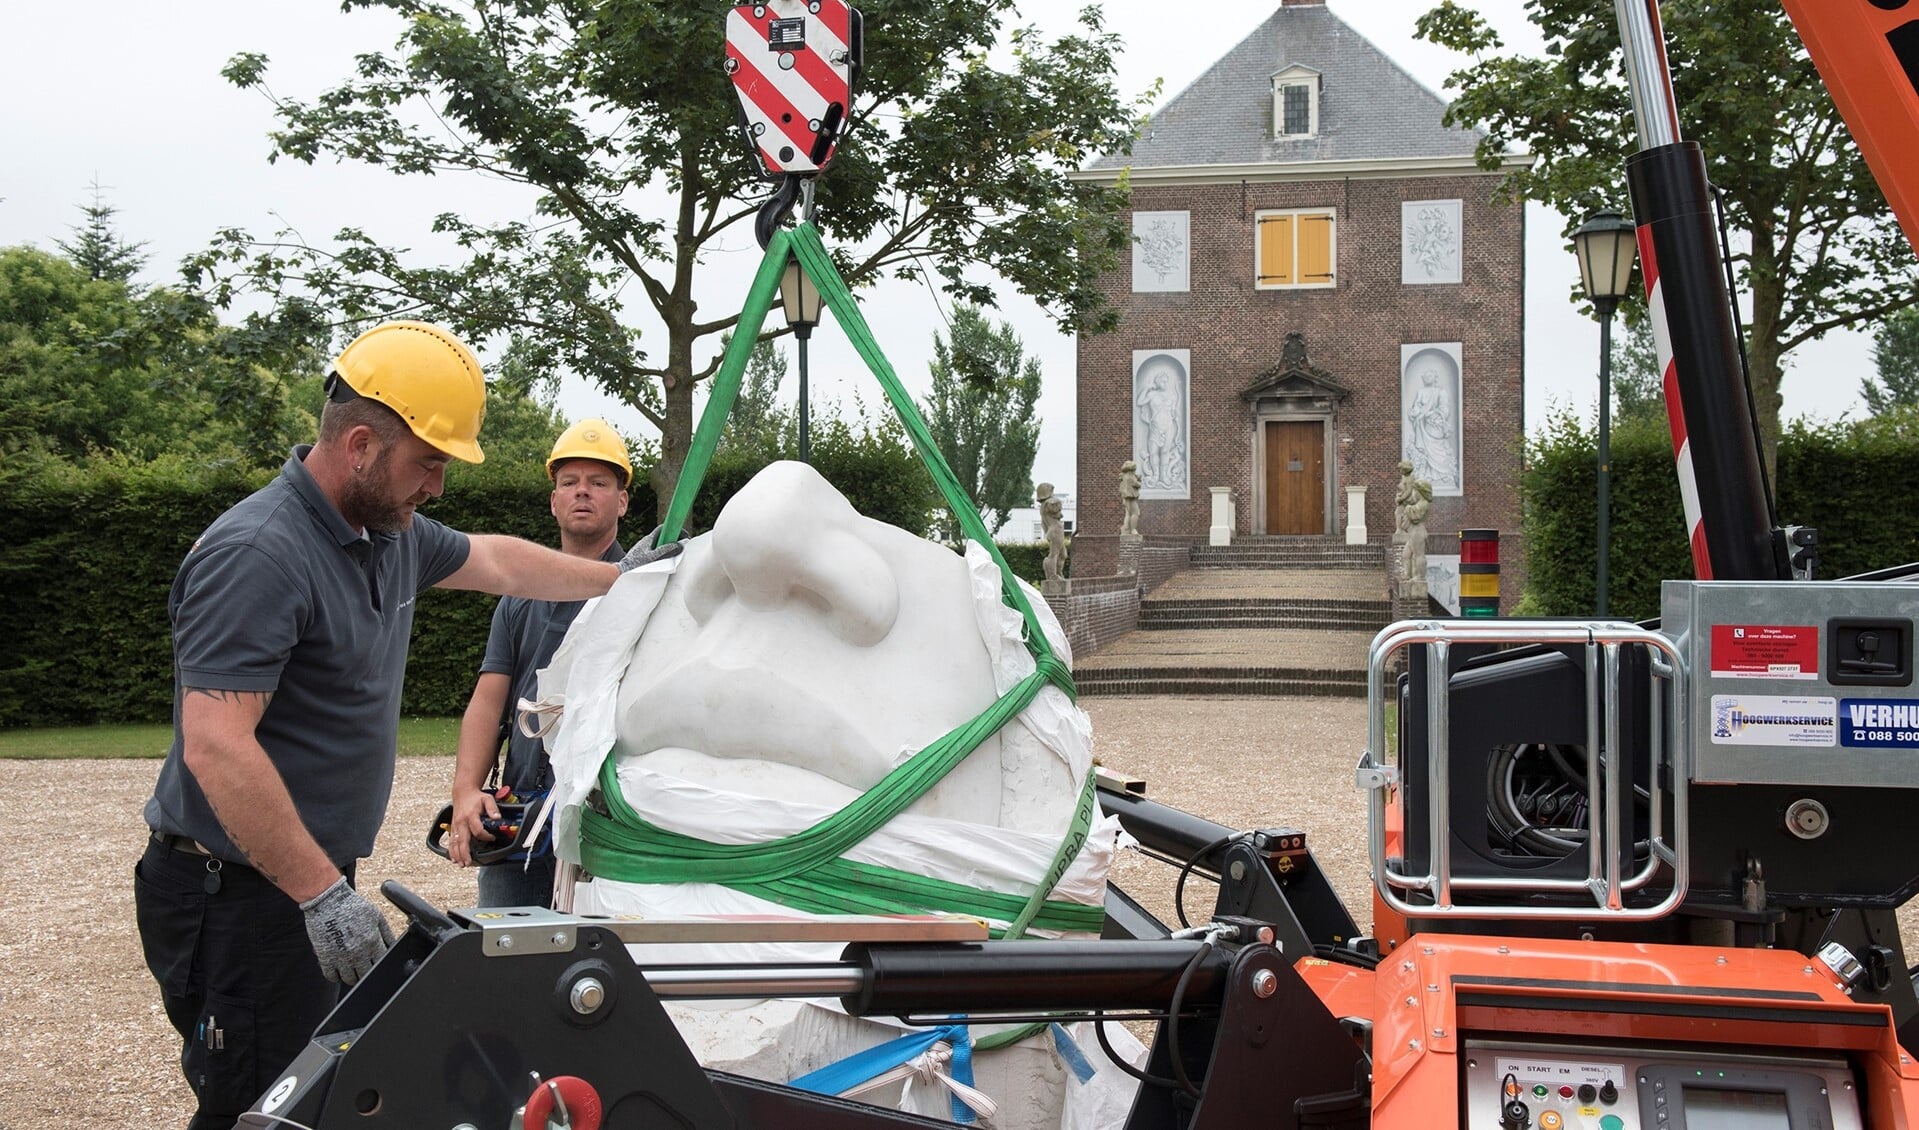 Een van de beelden van Eppe de Haan wordt geplaats op het voorplein van Huygens' Hofwijck in Voorburg (foto: Michel Groen).